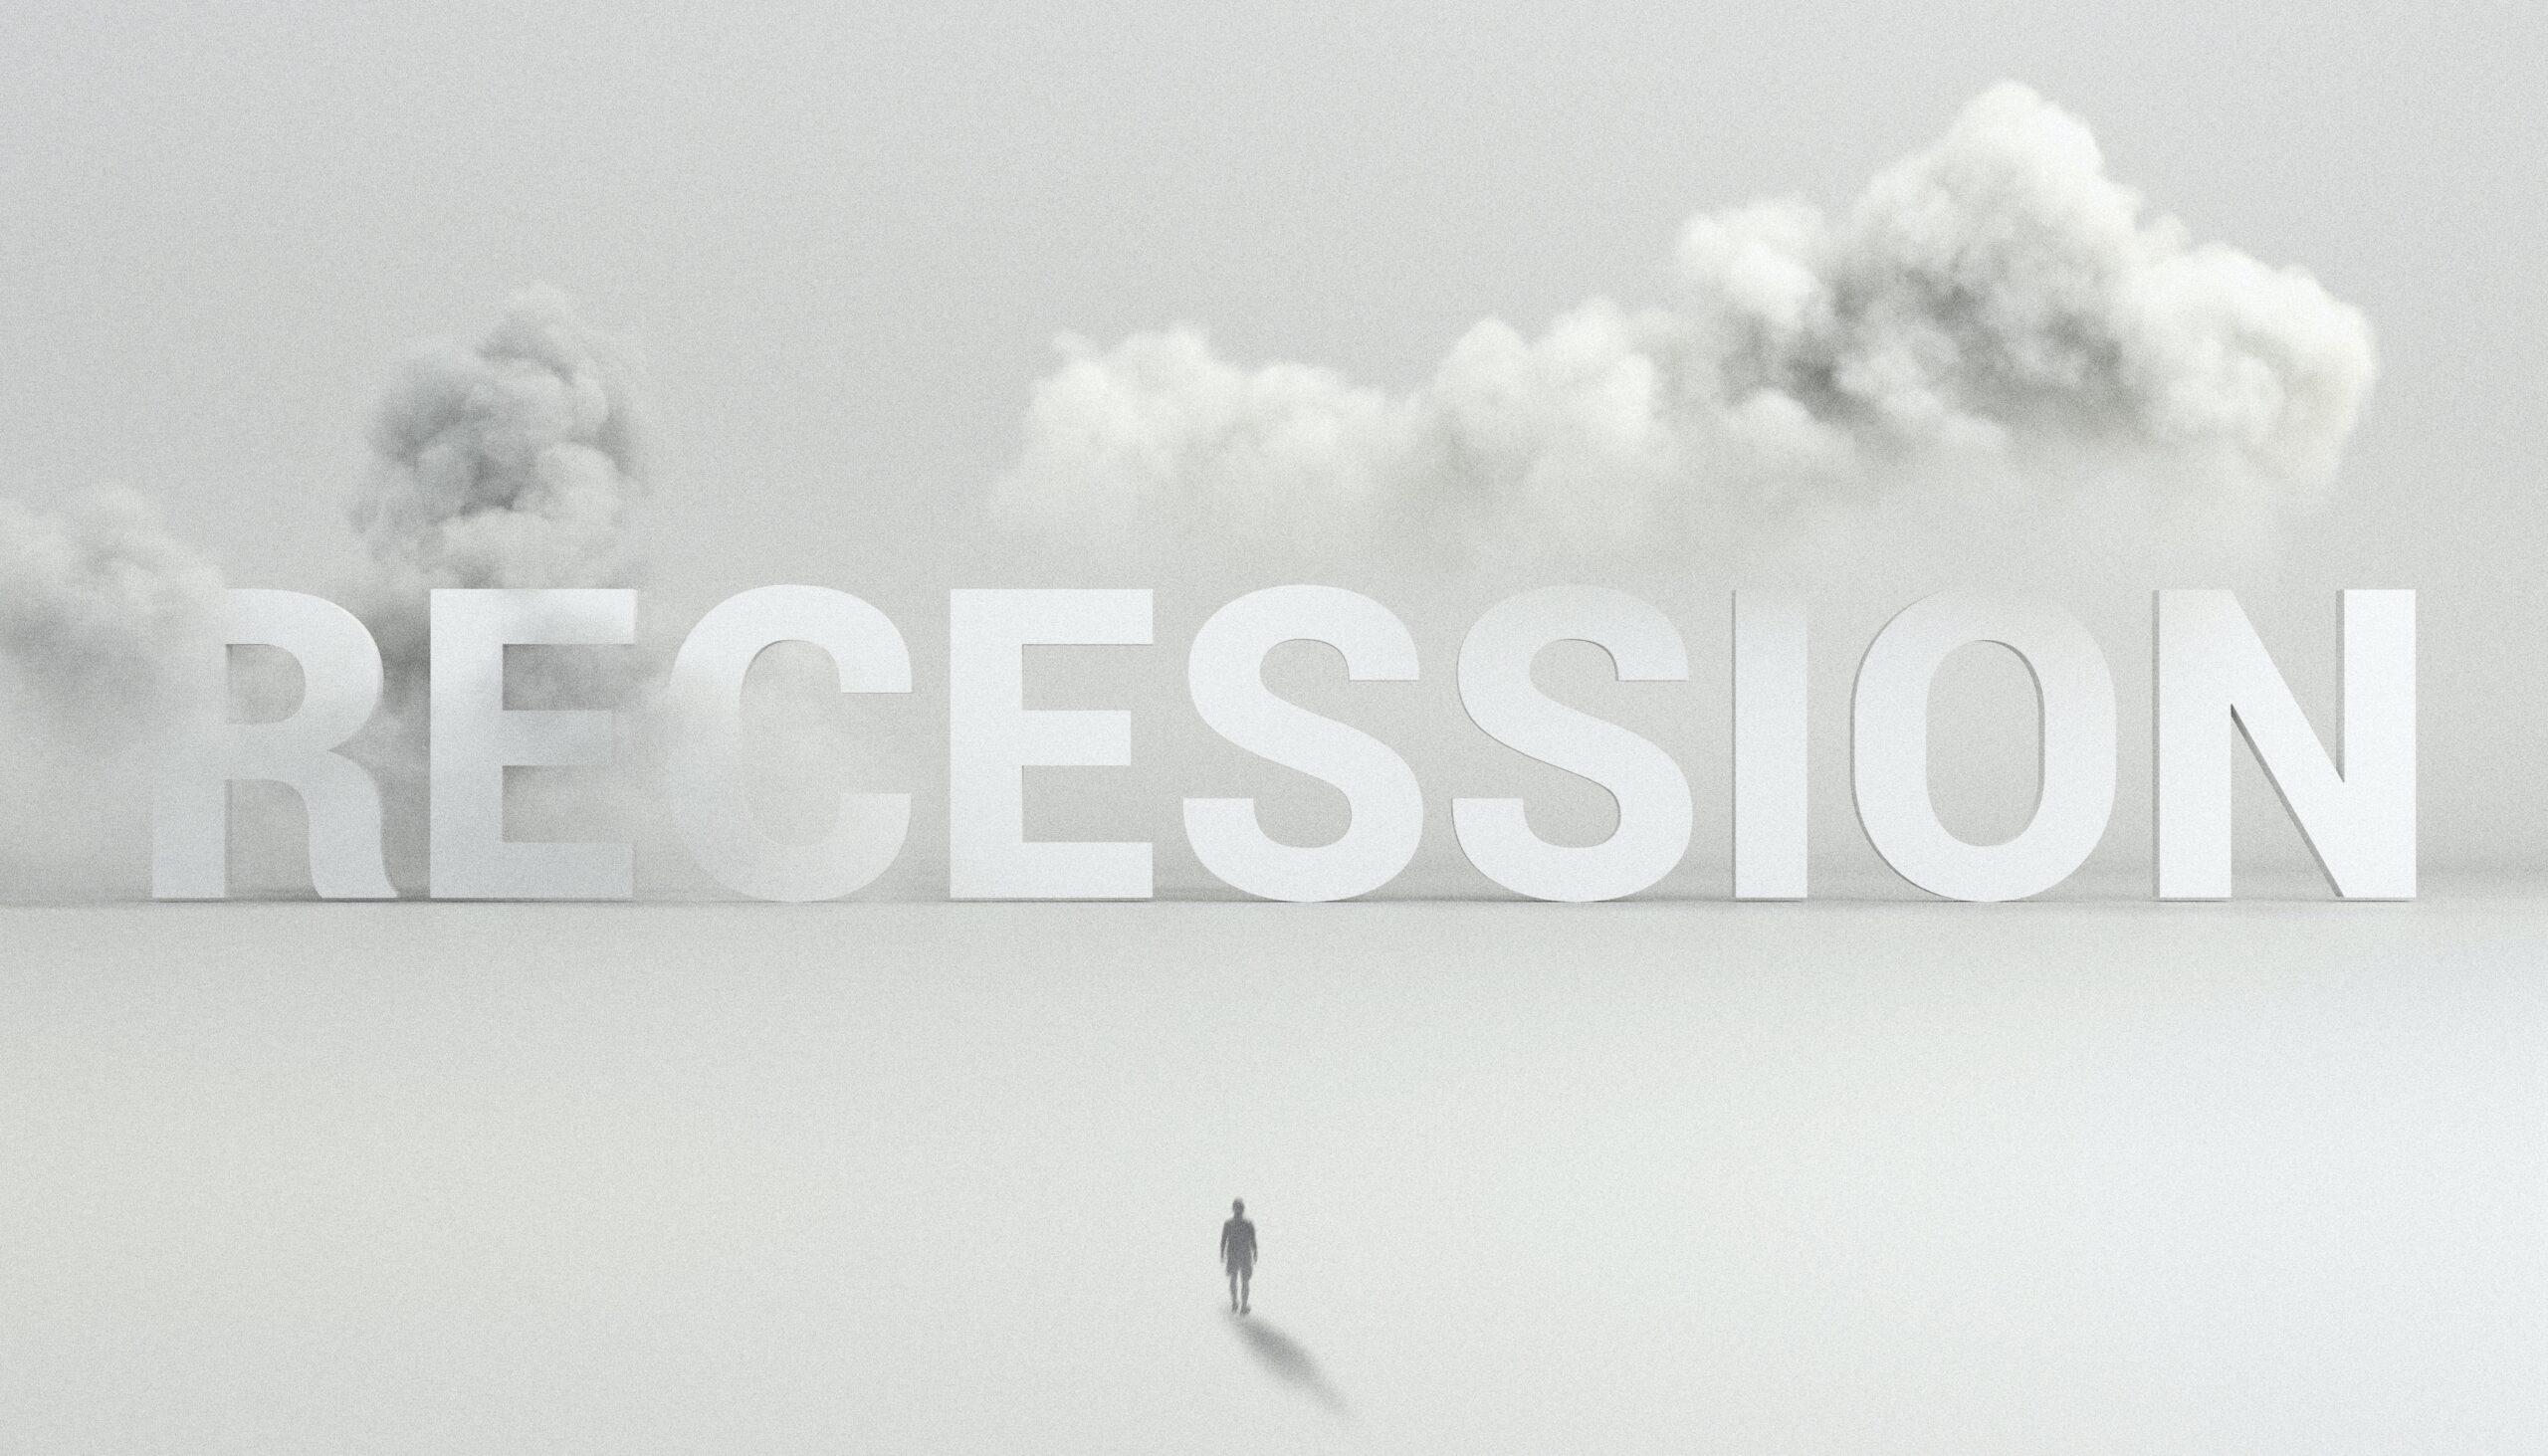 Verwachten wij een recessie en hoe reageren aandelen?